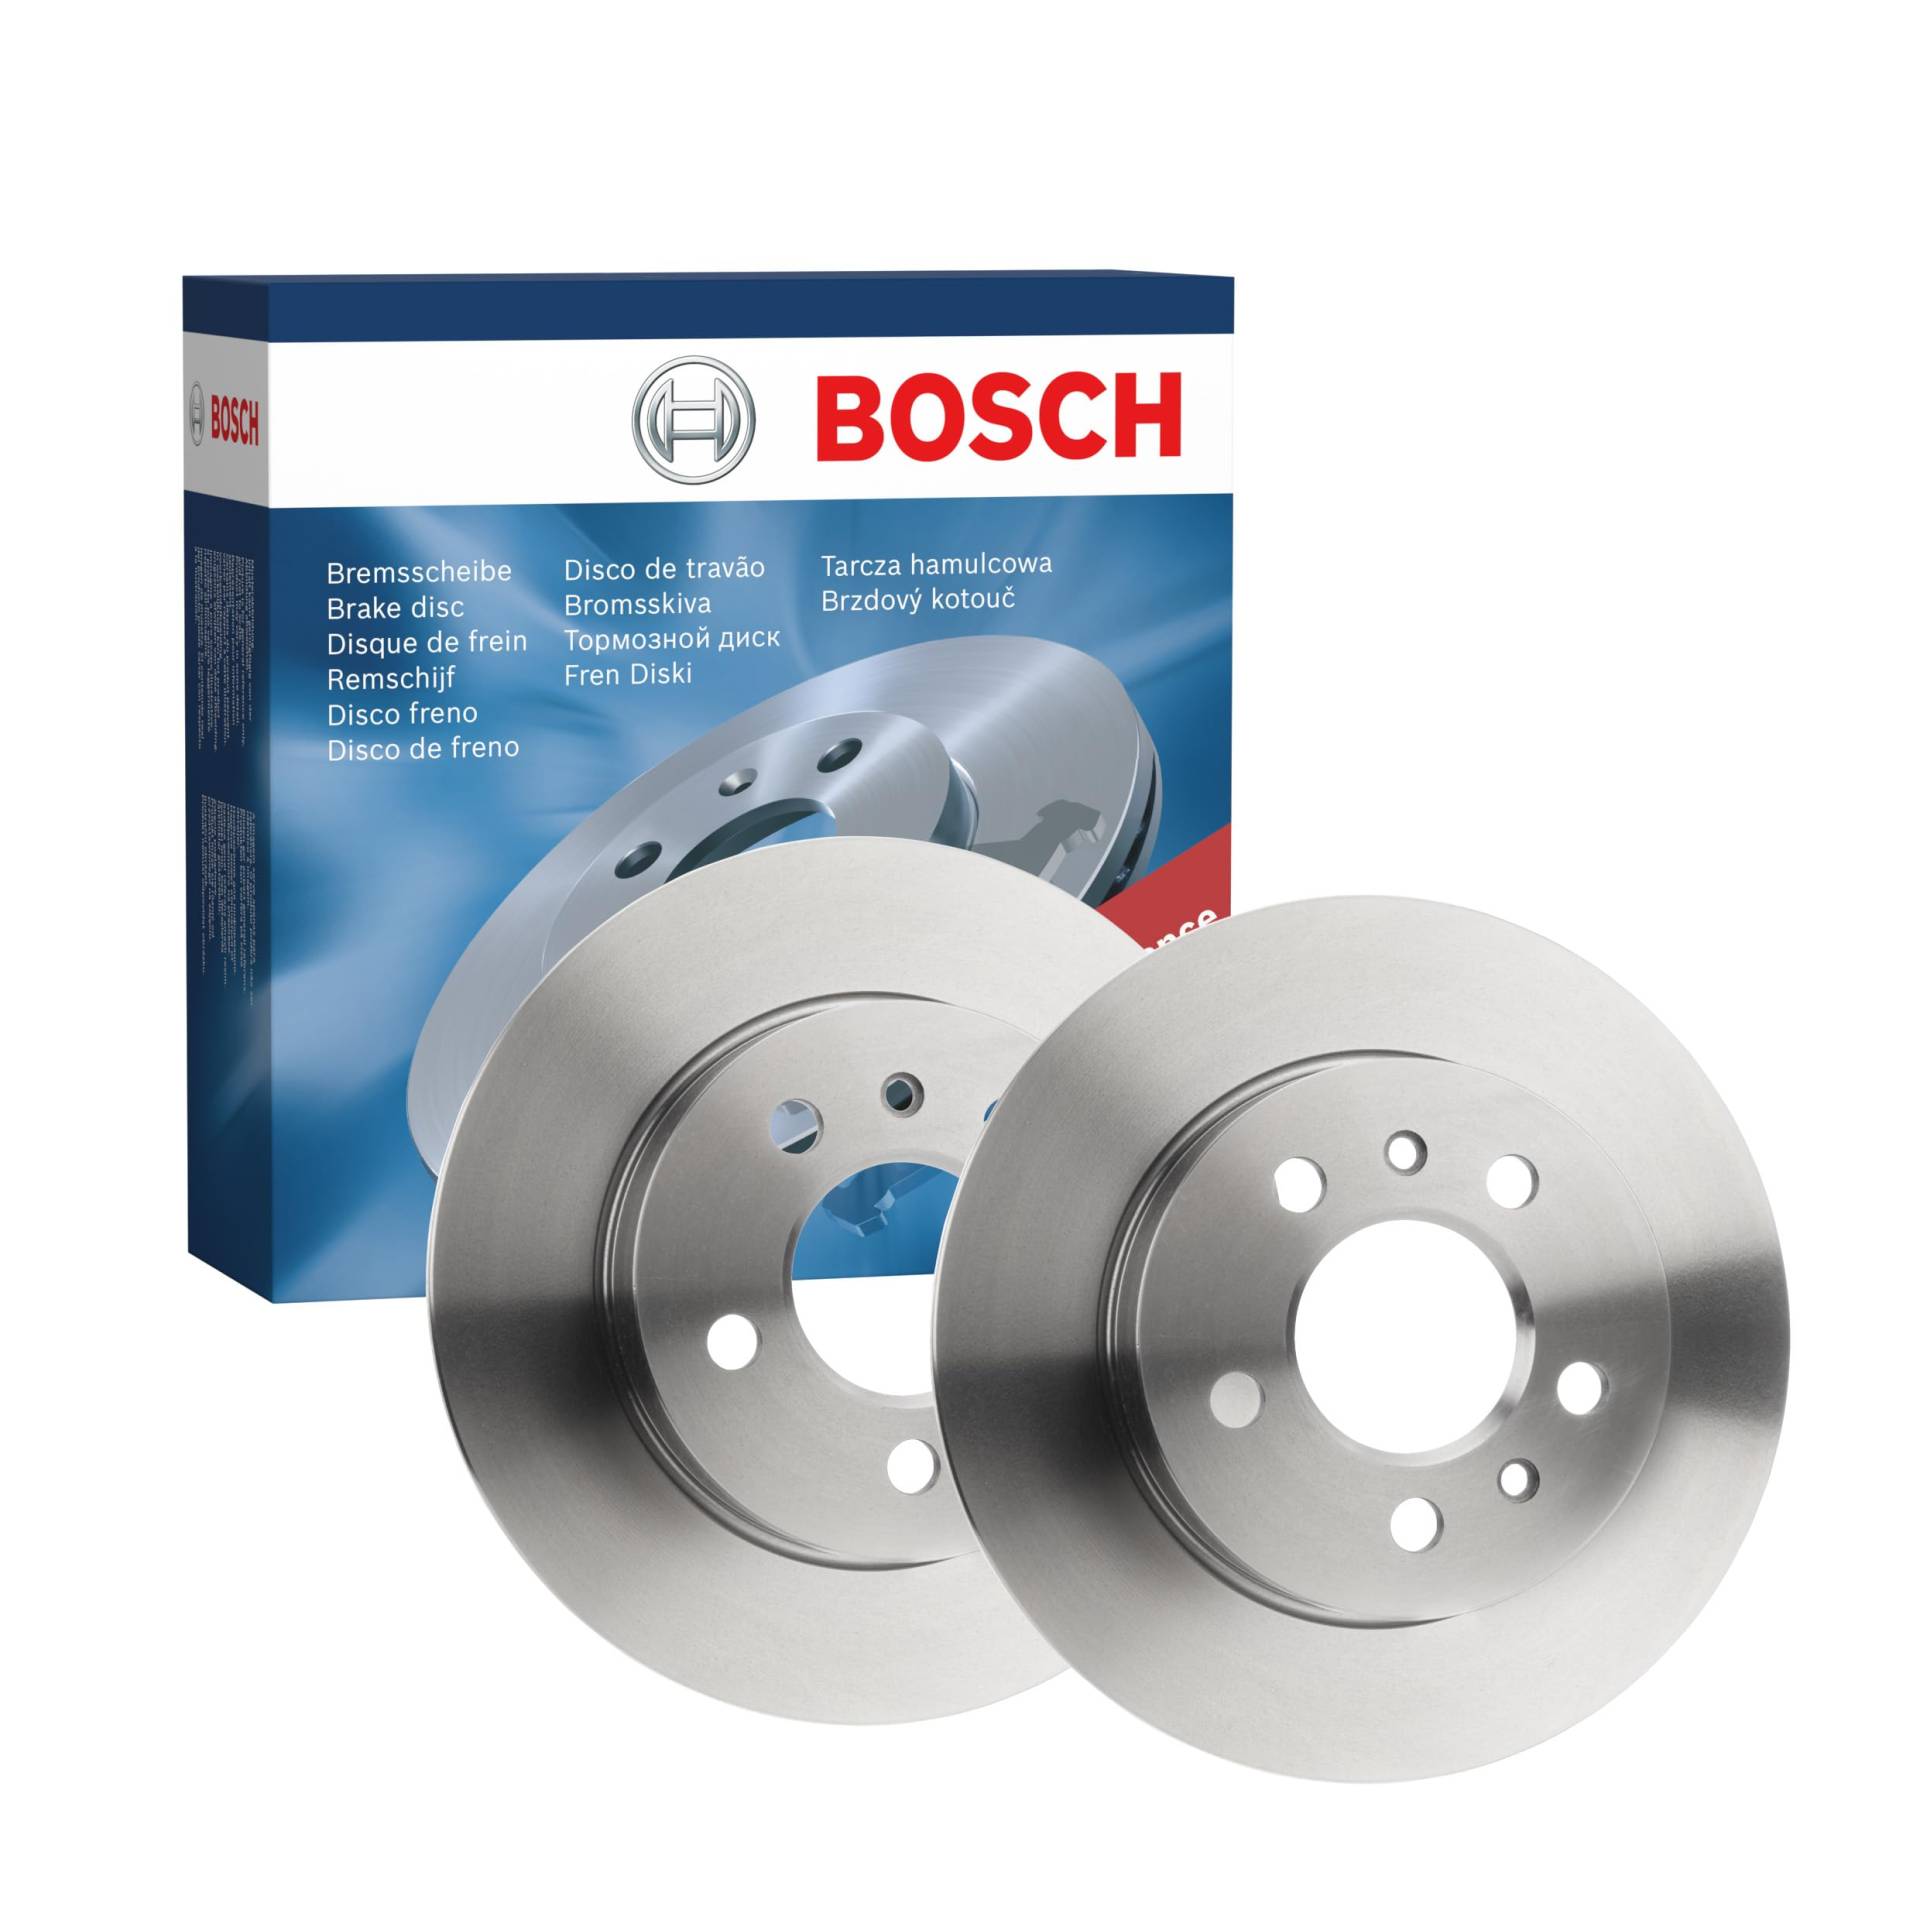 Bosch BD670 Bremsscheiben - Hinterachse - ECE-R90 Zertifizierung - zwei Bremsscheiben pro Set von Bosch Automotive